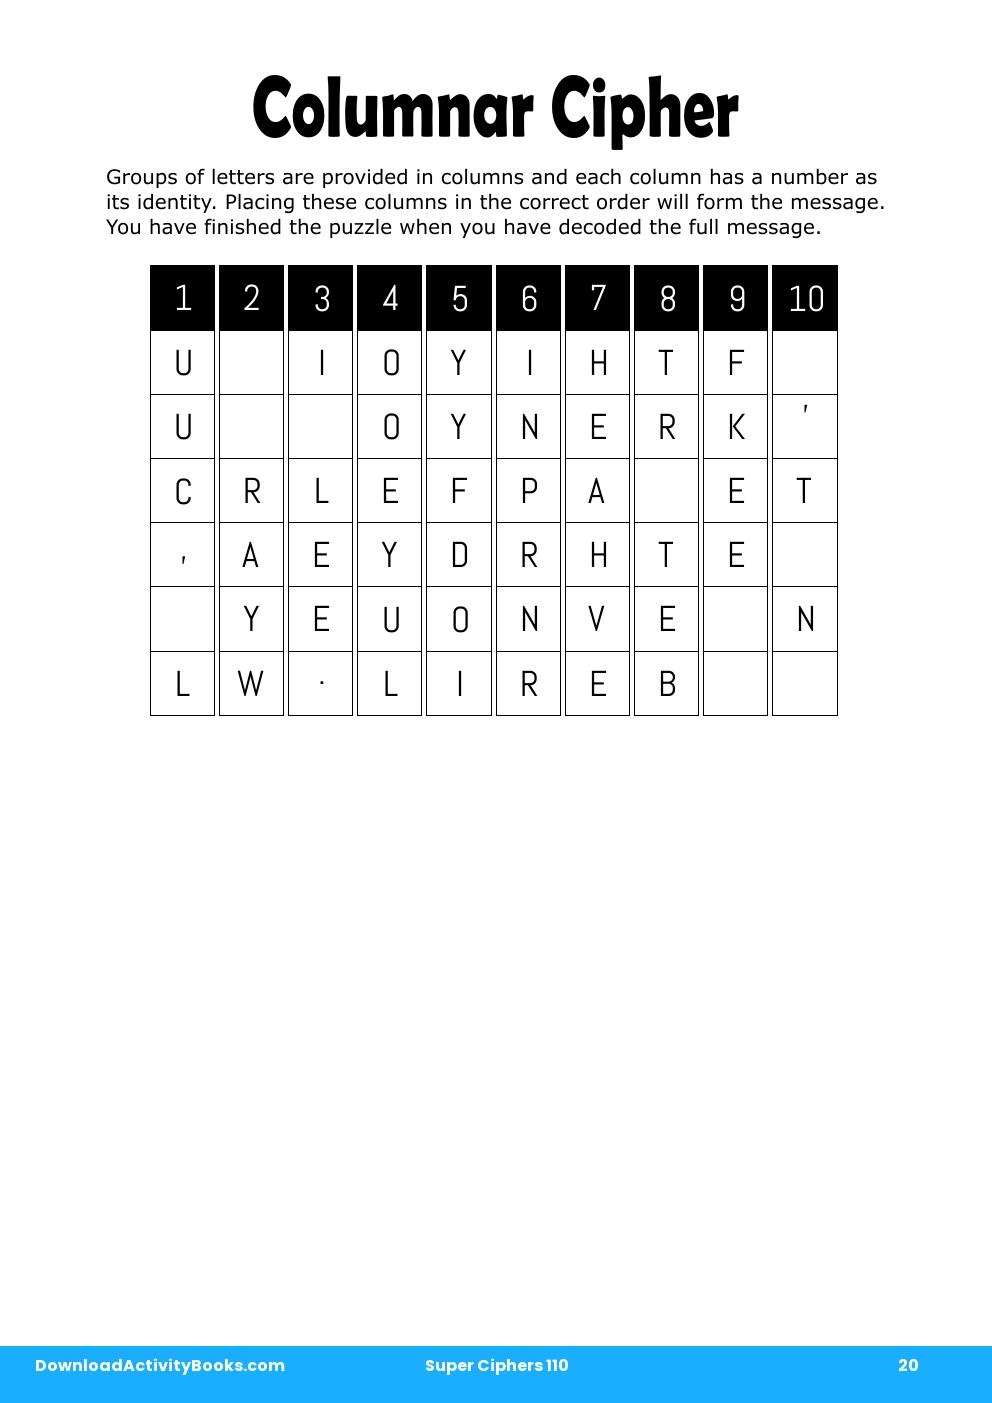 Columnar Cipher in Super Ciphers 110